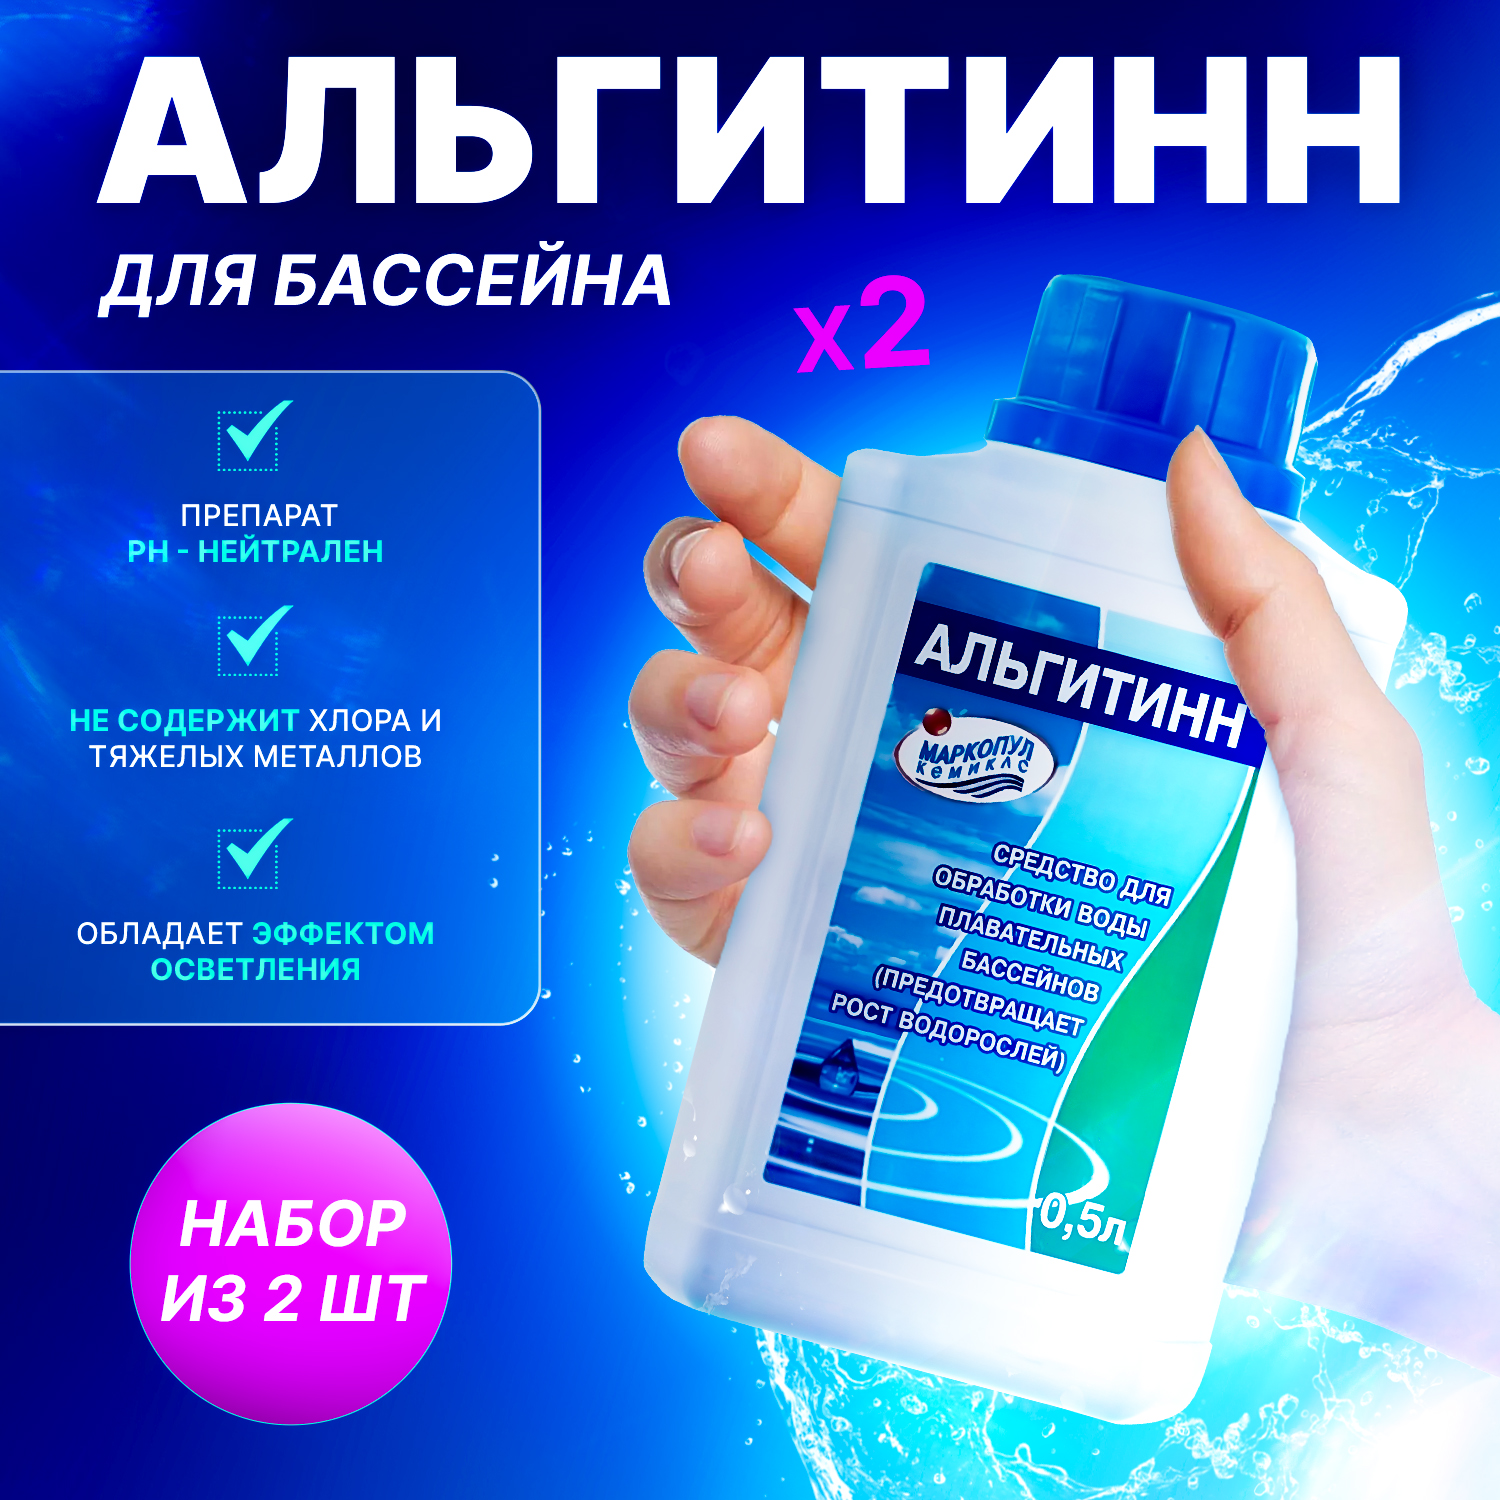 Химия для бассейна Маркопул кемиклс Альгитинн для устранения водорослей 0,5 л, 2 бутылки